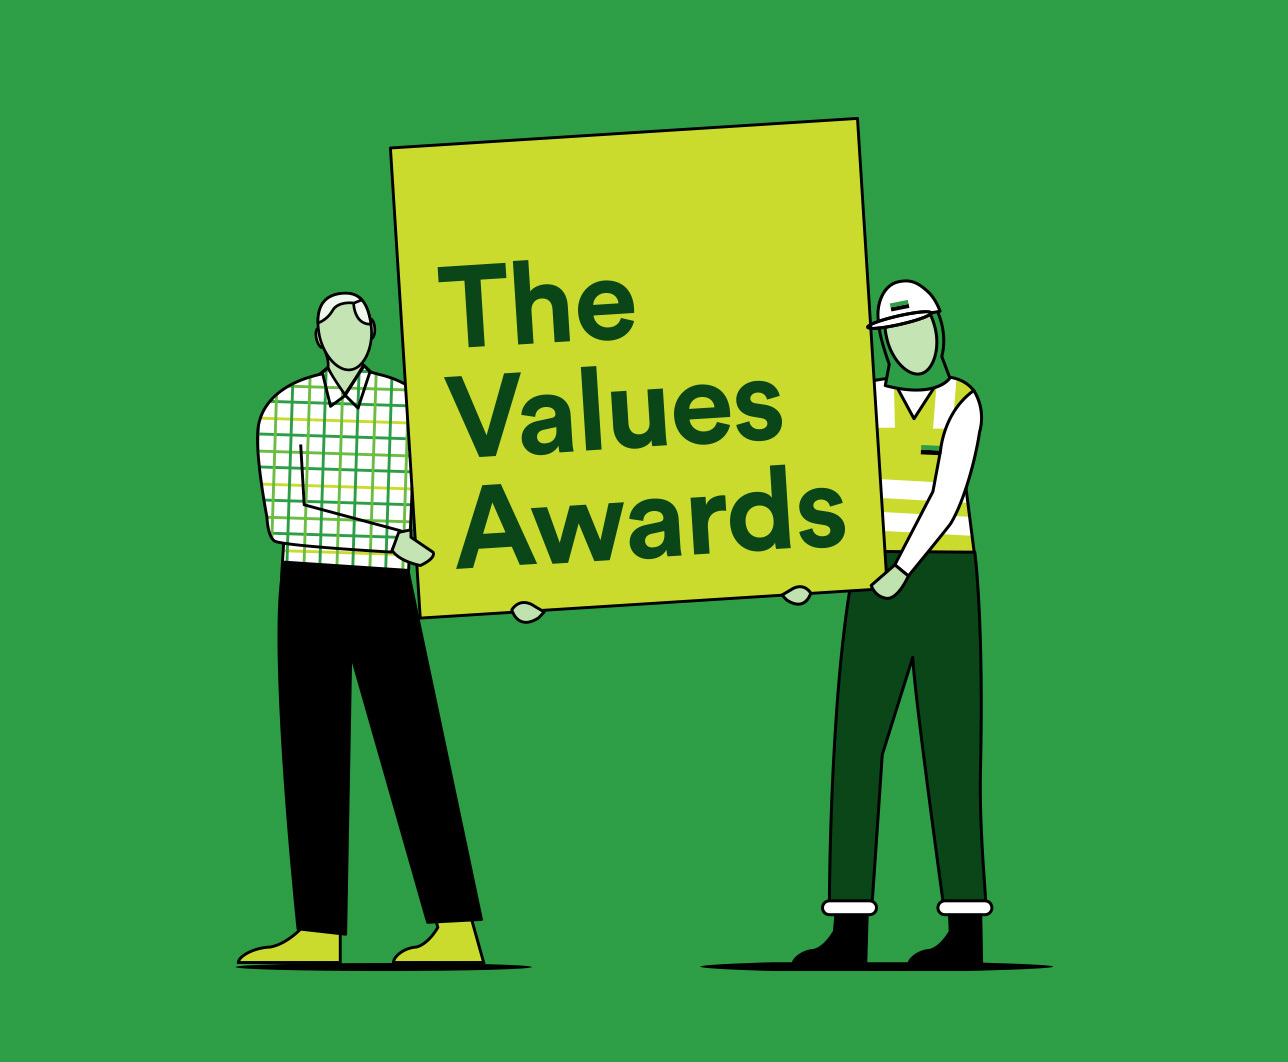 Values Awards logos